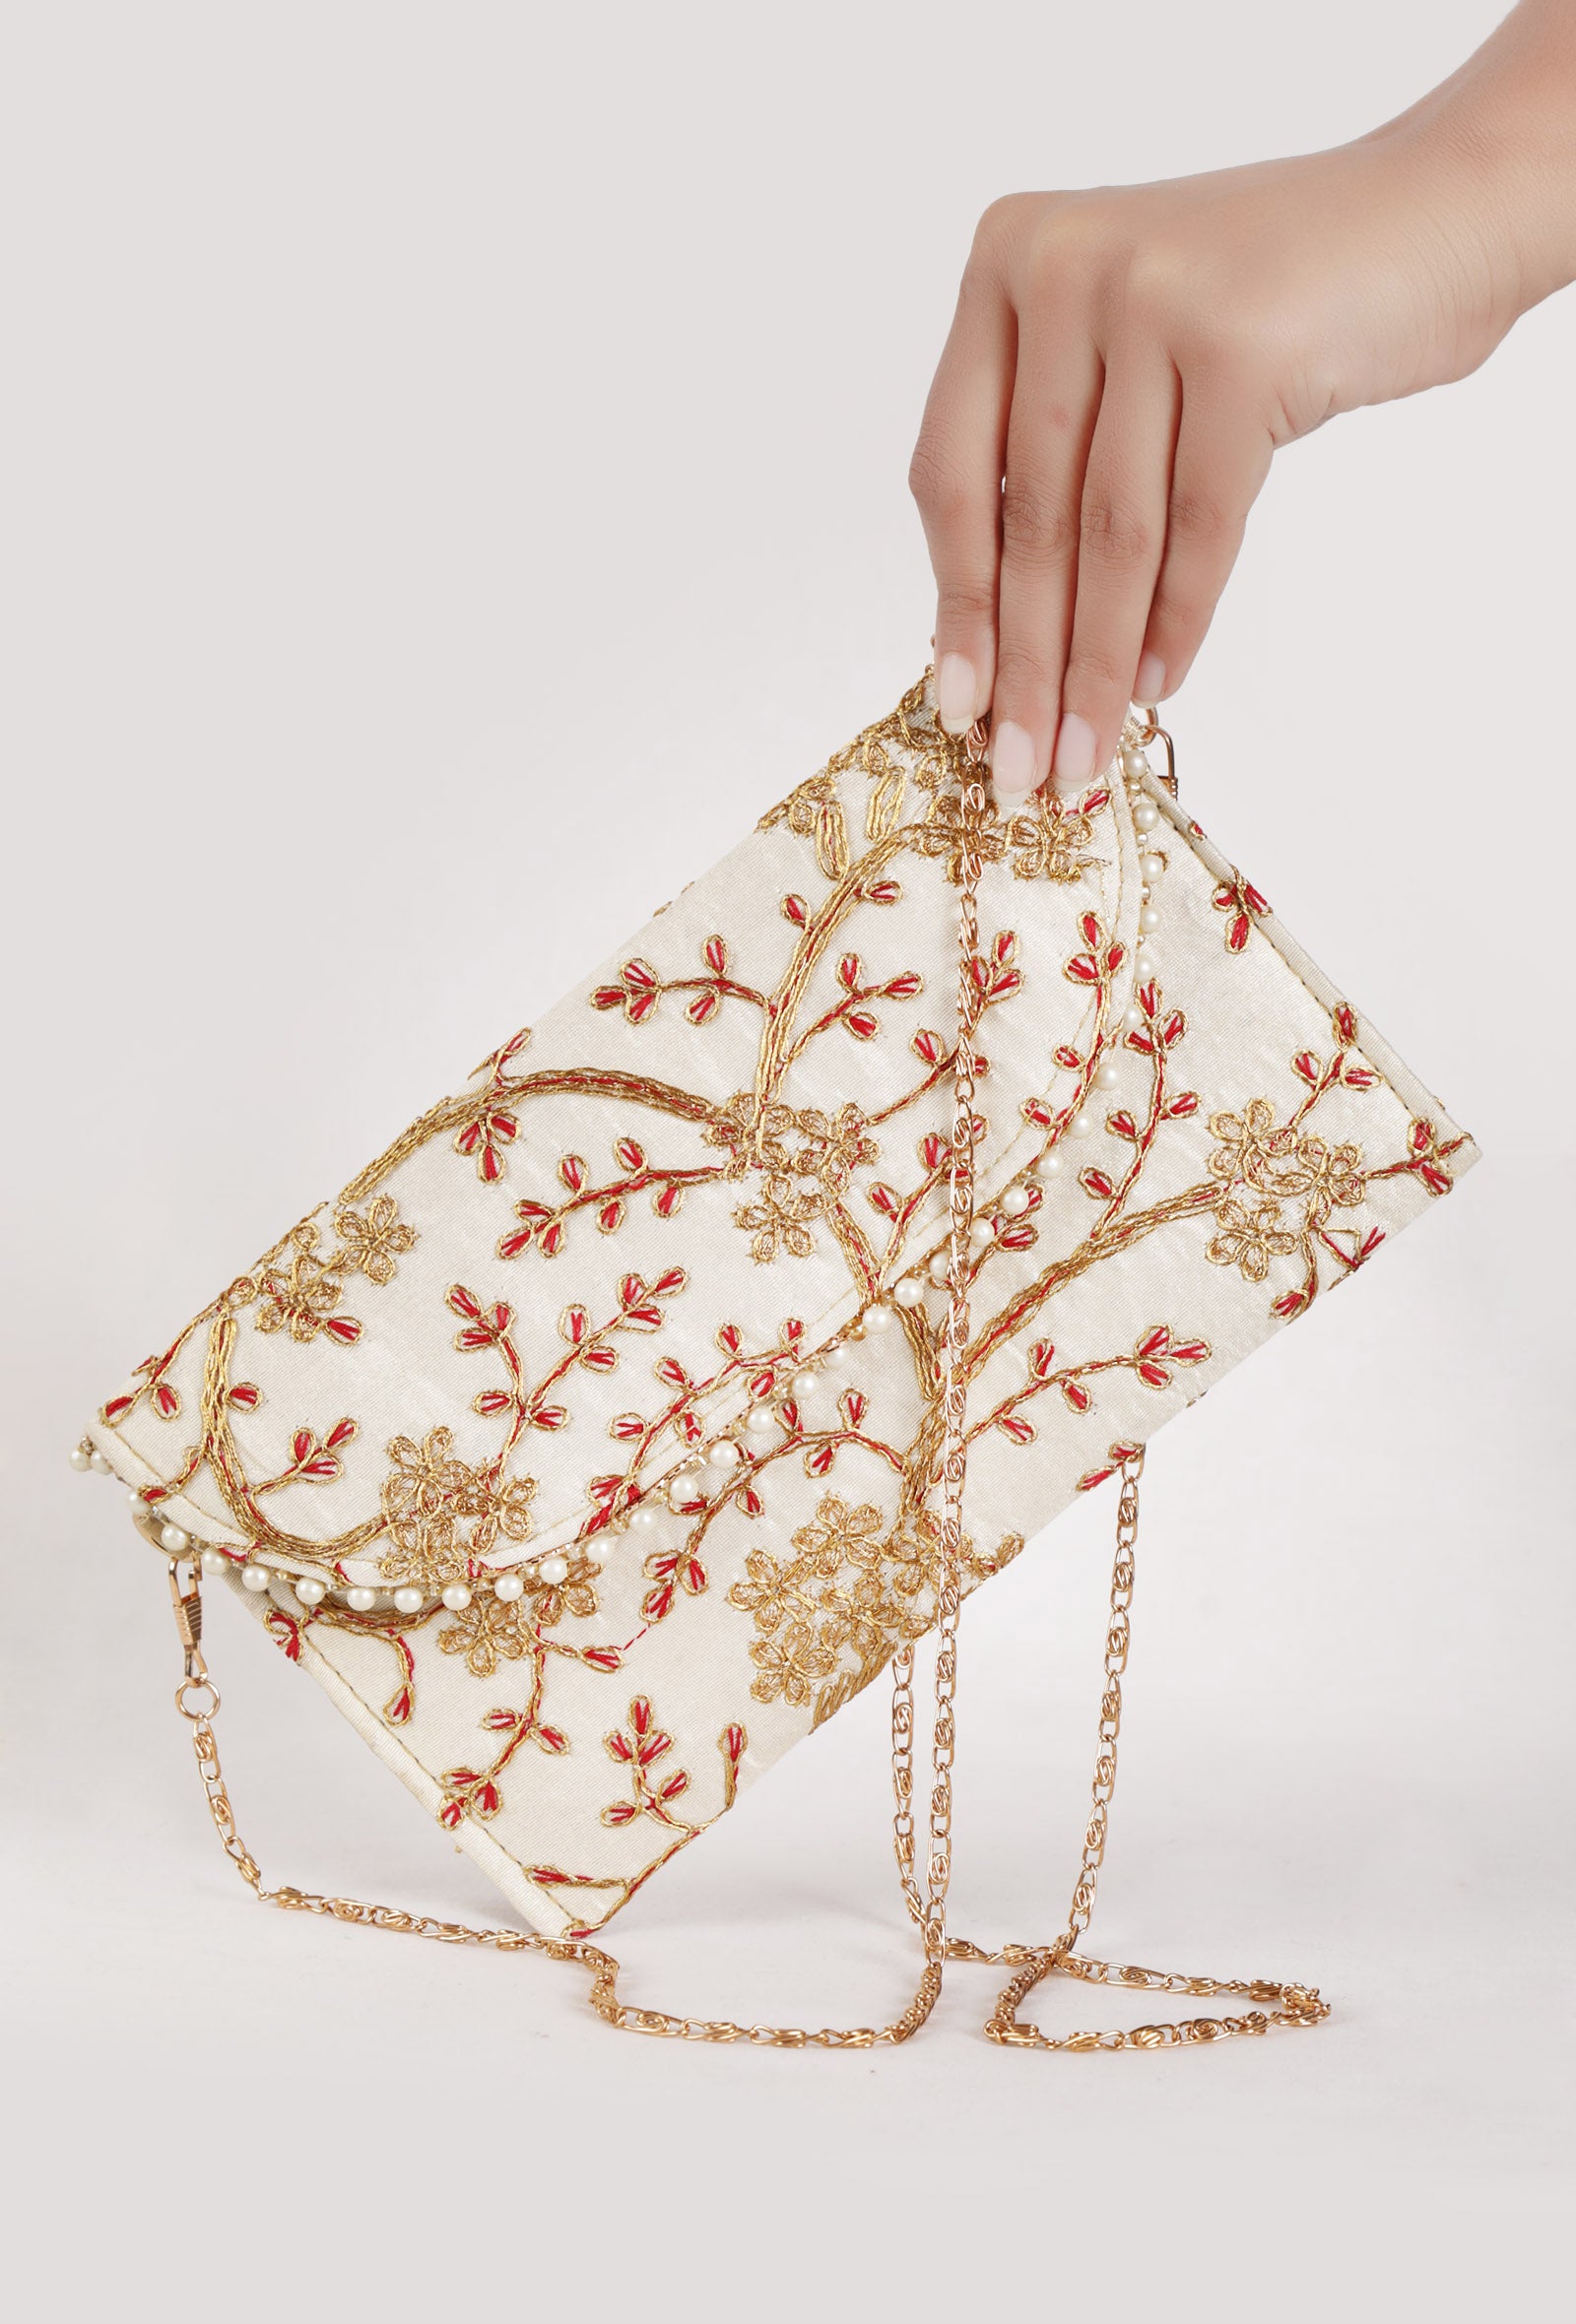 Snowy White Zari Embroidered Silk Envelope Clutch